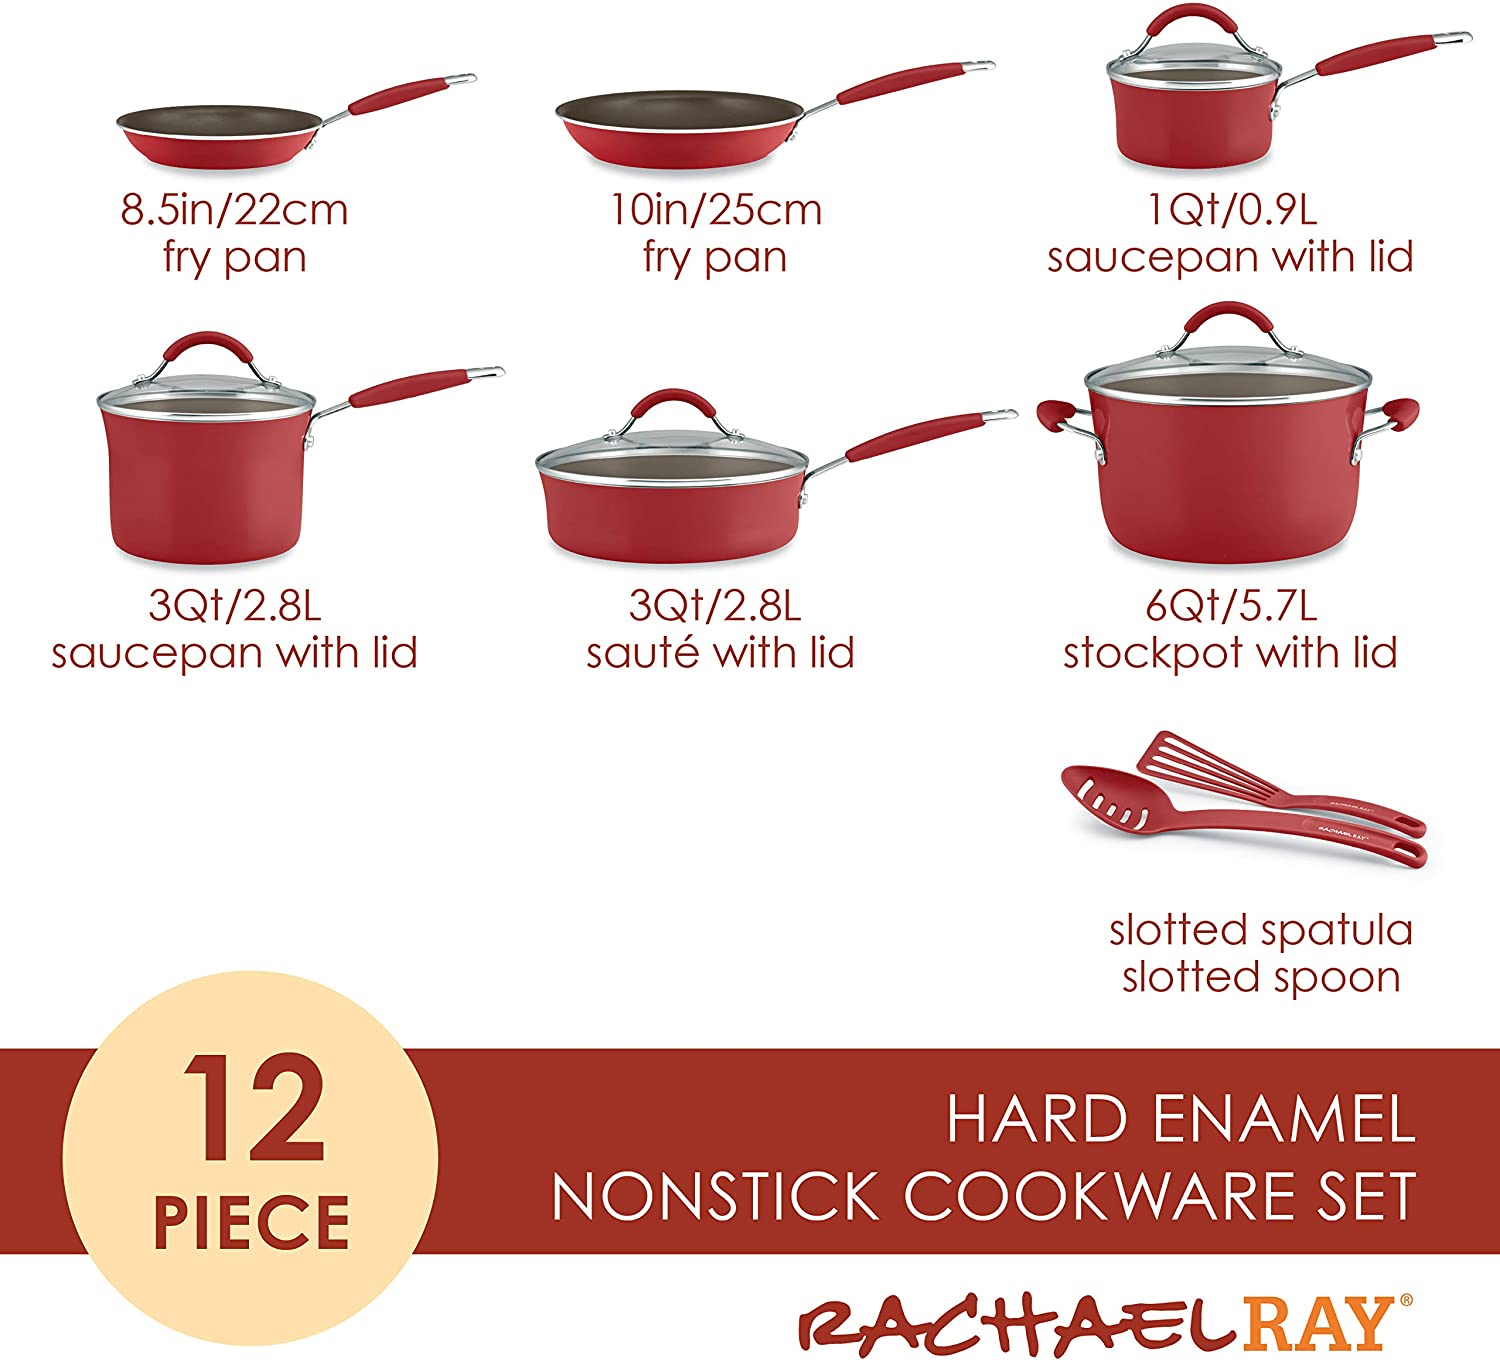 Rachael Ray Cucina 12 Piece Nonstick Cookware Set, Cranberry Red - Loft410